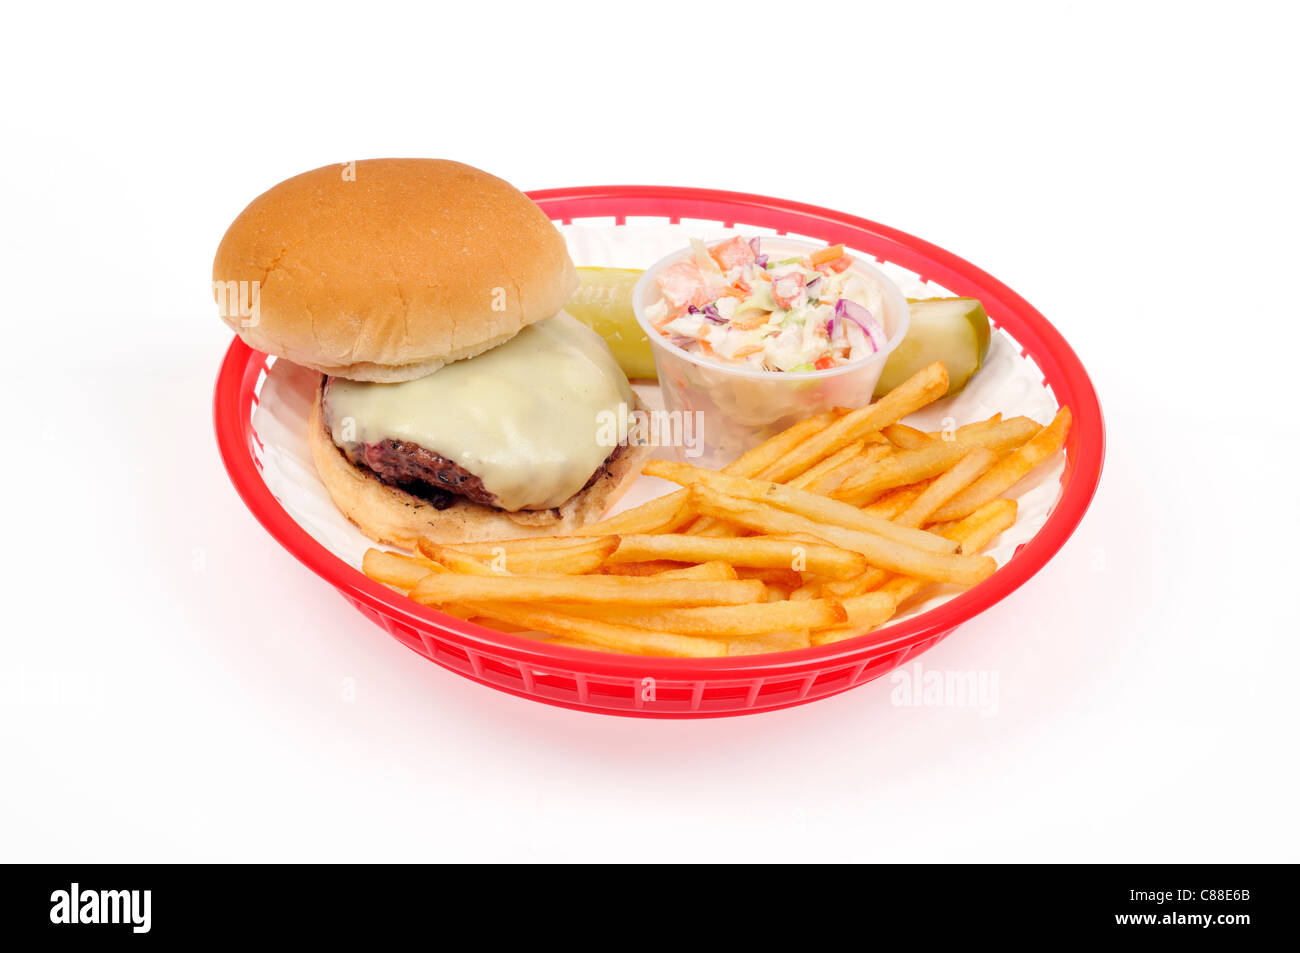 Gegrillte Cheeseburger mit Pommes Frites oder Chips, Krautsalat und eine Essiggurke in einem roten retro Warenkorb auf weißem Hintergrund, Ausschnitt. USA America Stockfoto